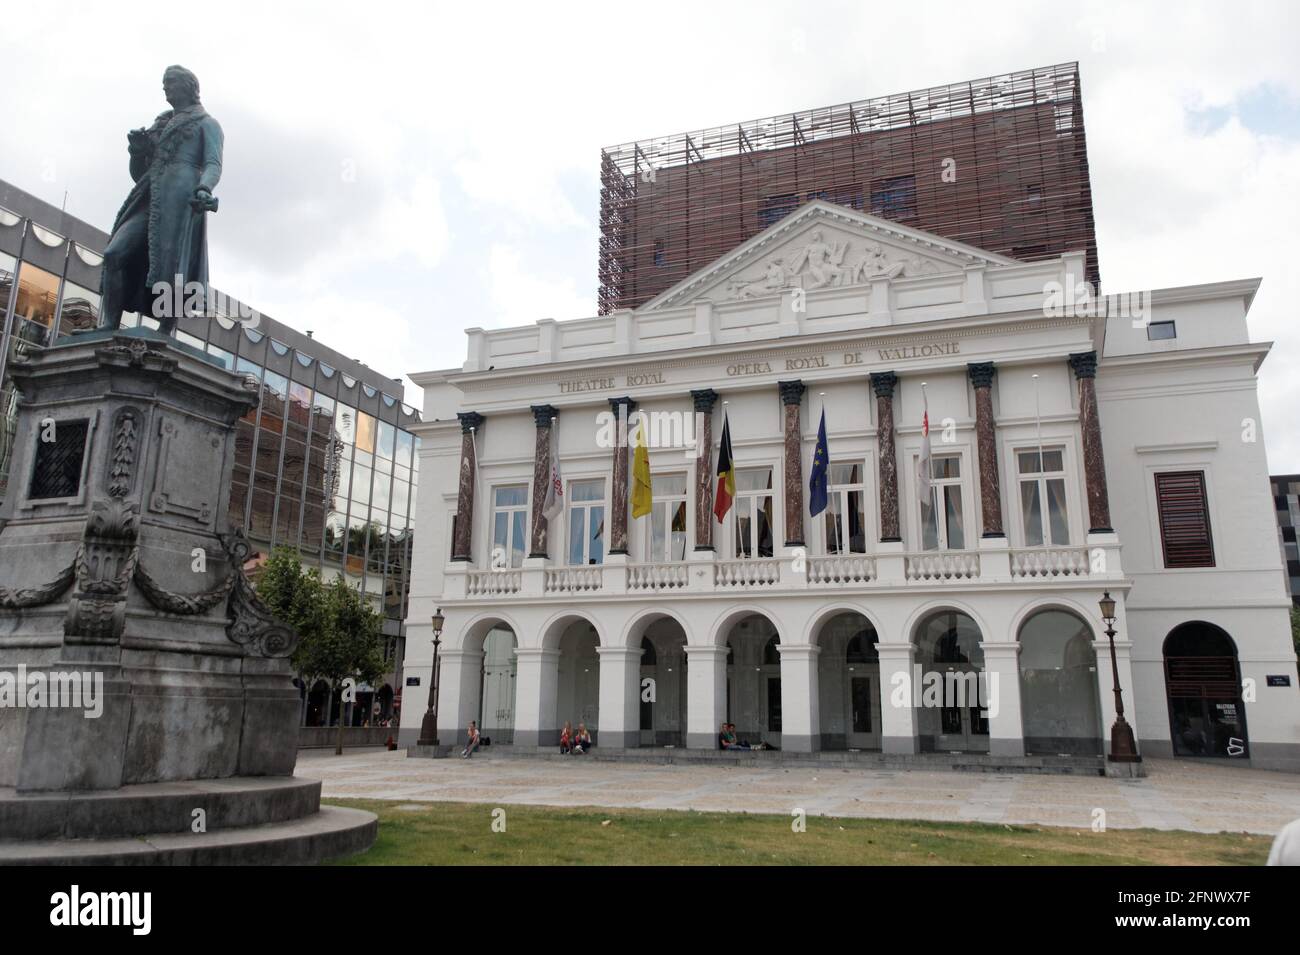 Opéra royal de Wallonie, la statue d'André Modeste Grétry   Place de l'Opéra, Liège Belgique Stock Photo